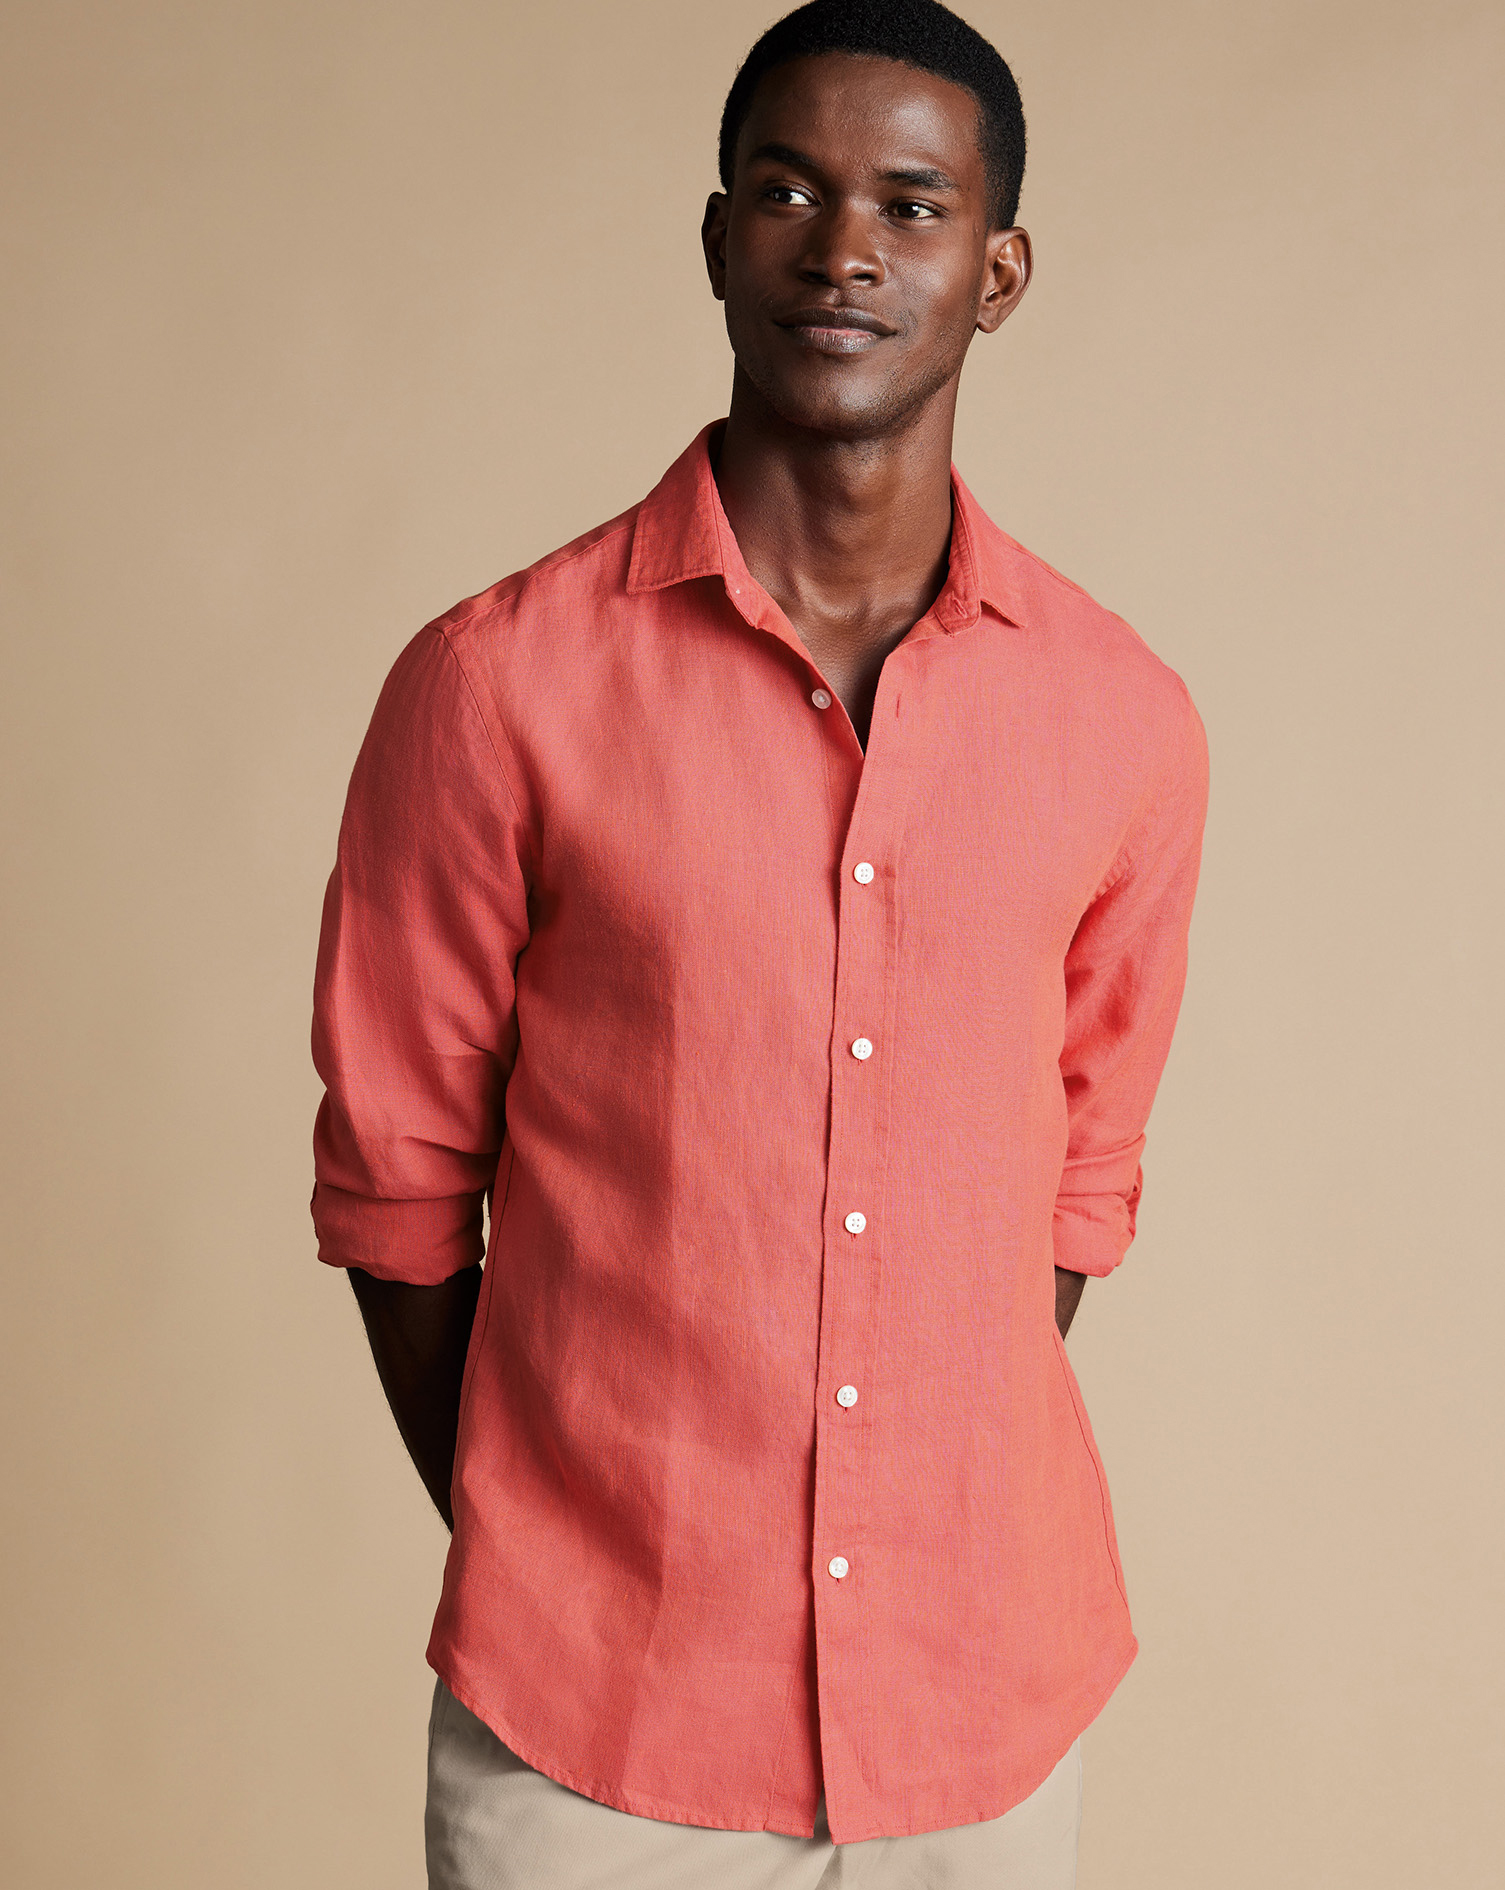 Men's Charles Tyrwhitt Pure Casual Shirt - Coral Pink Size XXXL Linen
